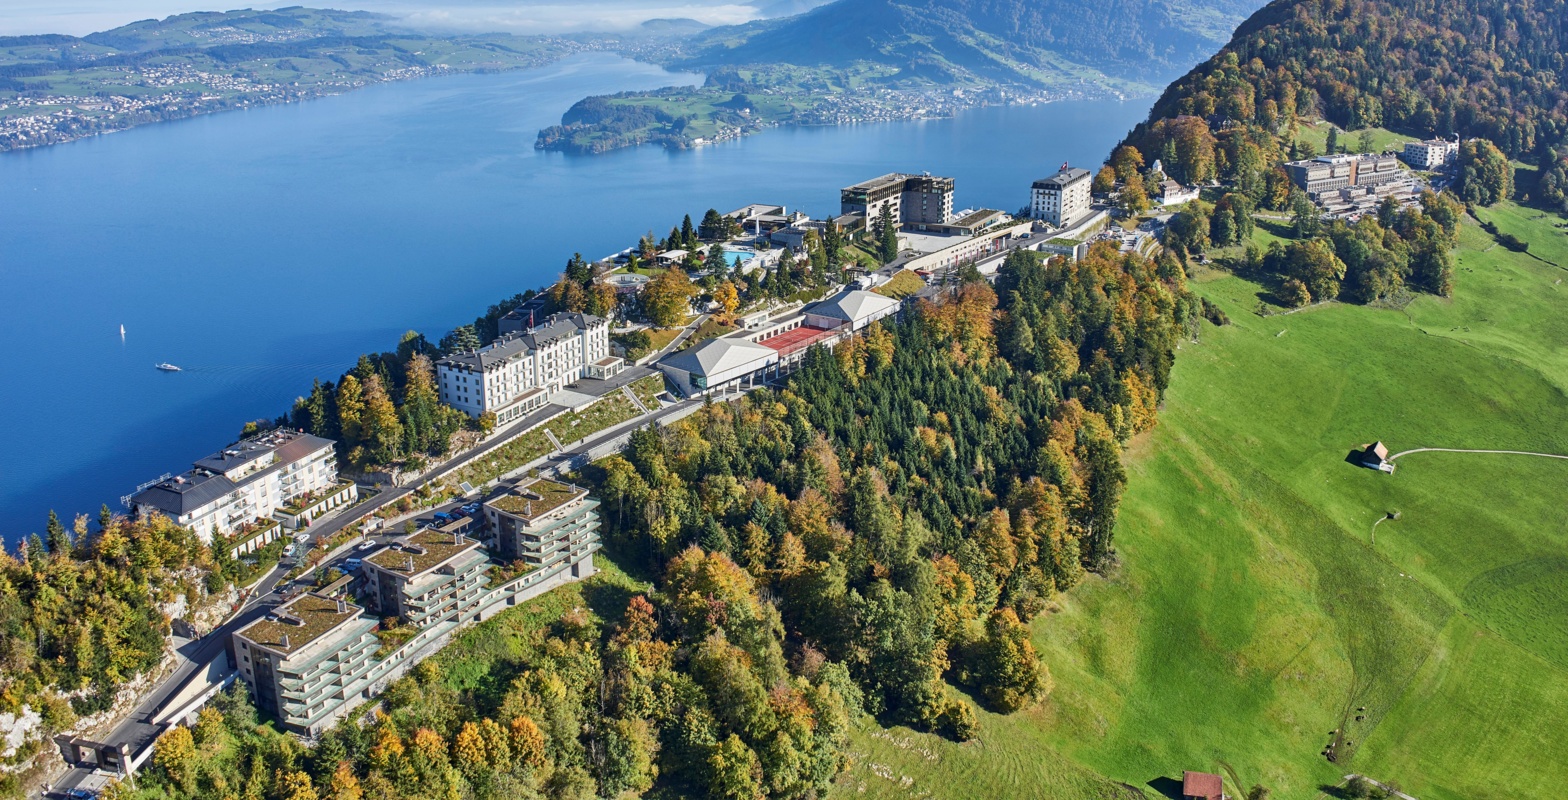 Bürgenstock Resort Lake Lucerne today